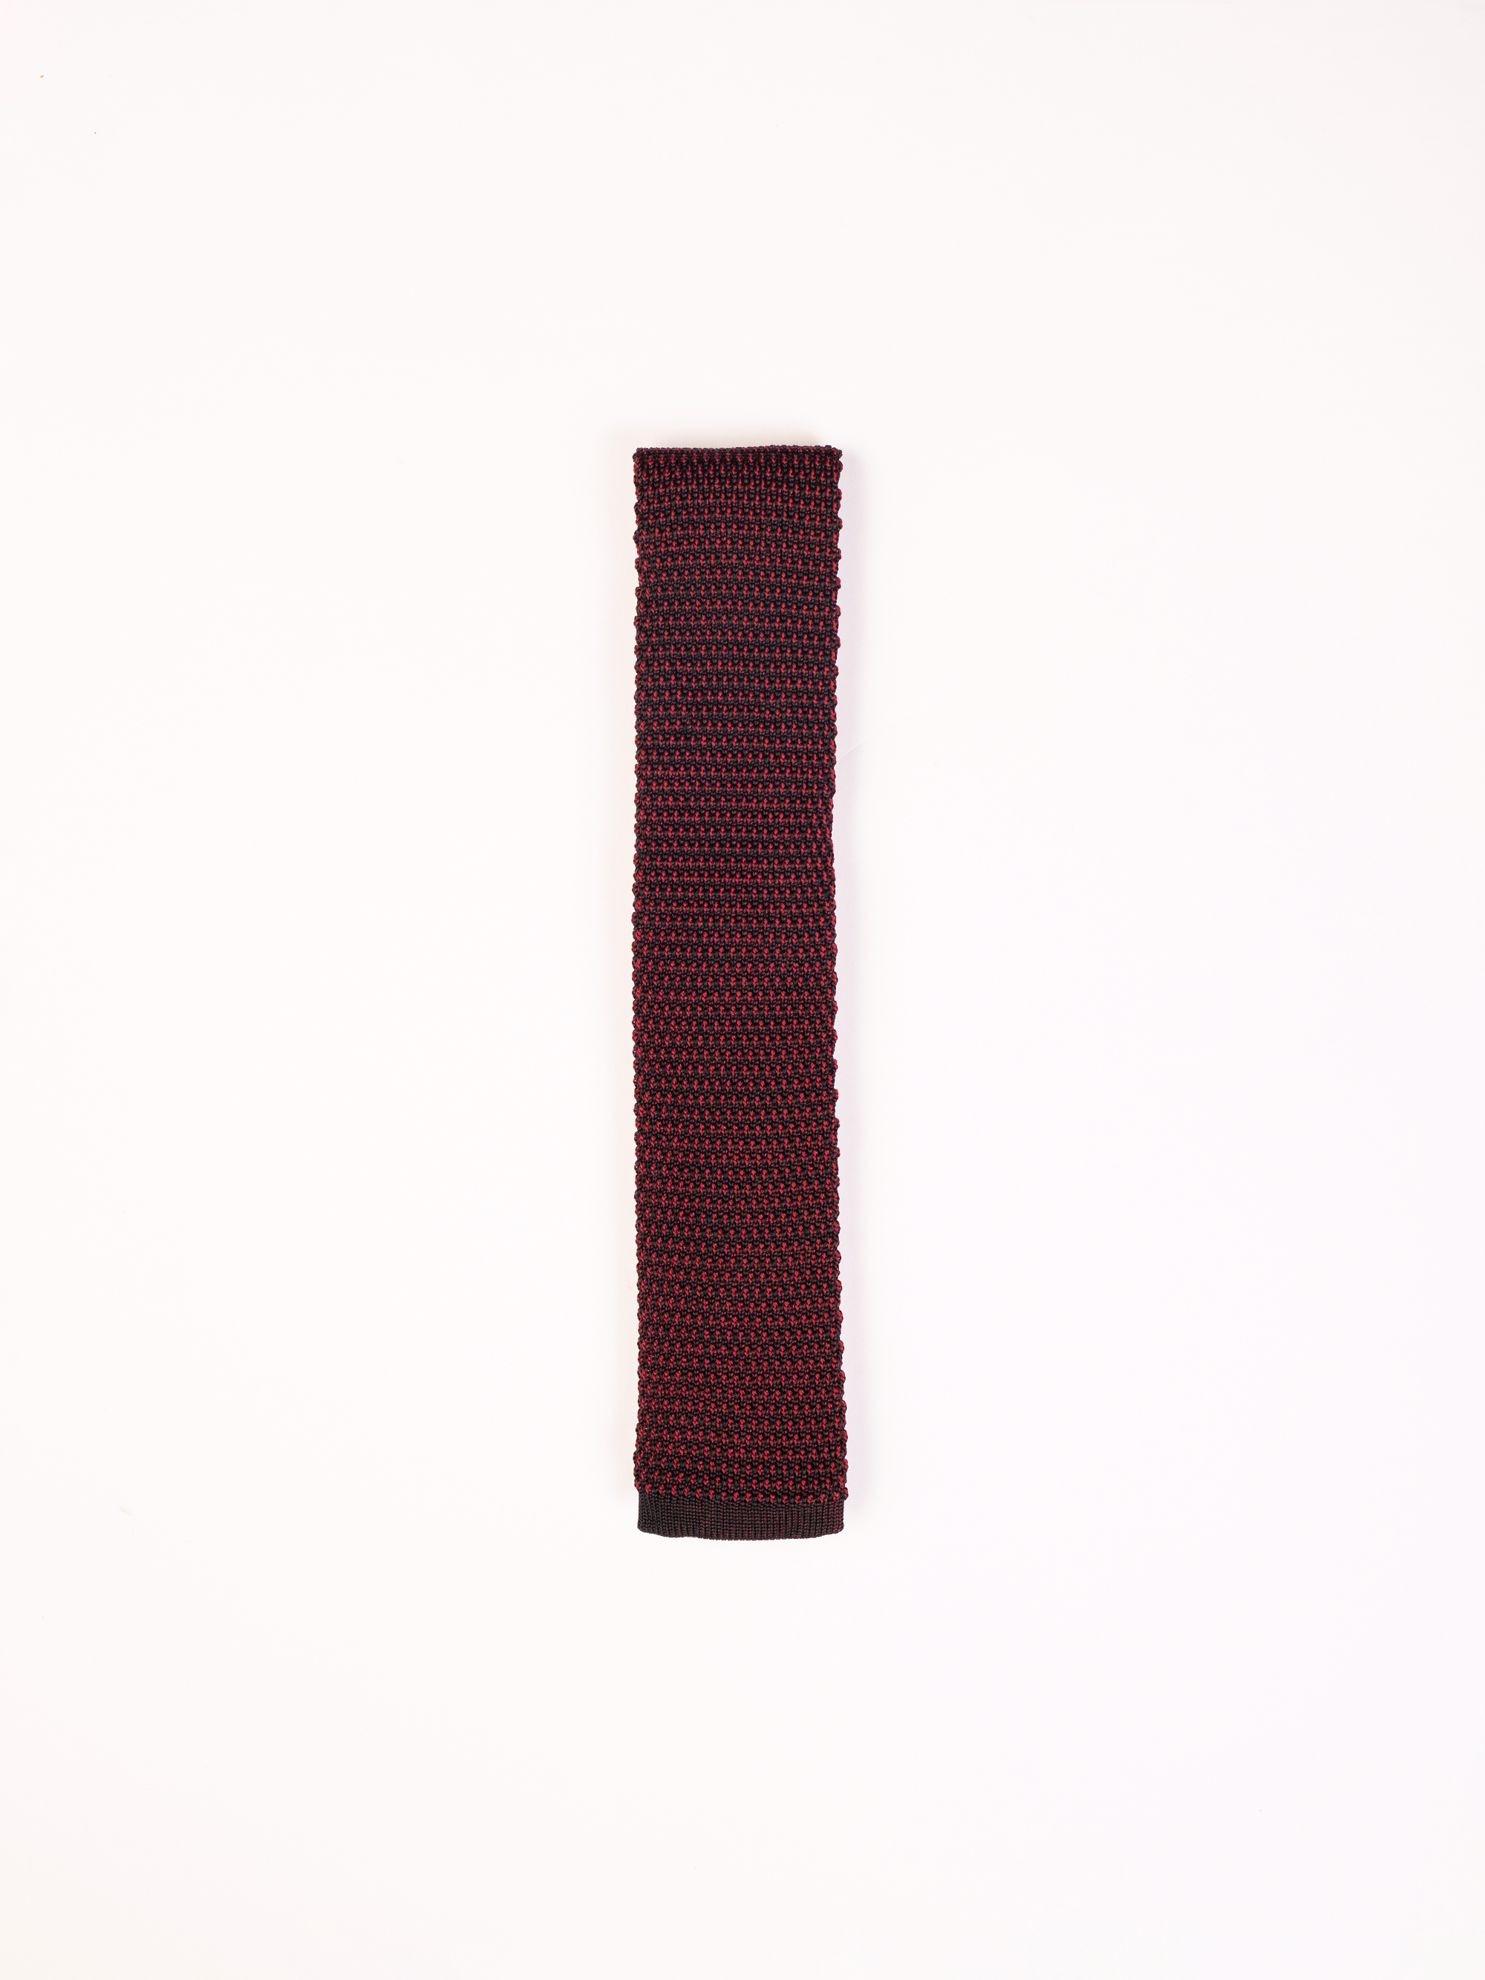 Karaca Erkek Kravat-Kırmızı. ürün görseli